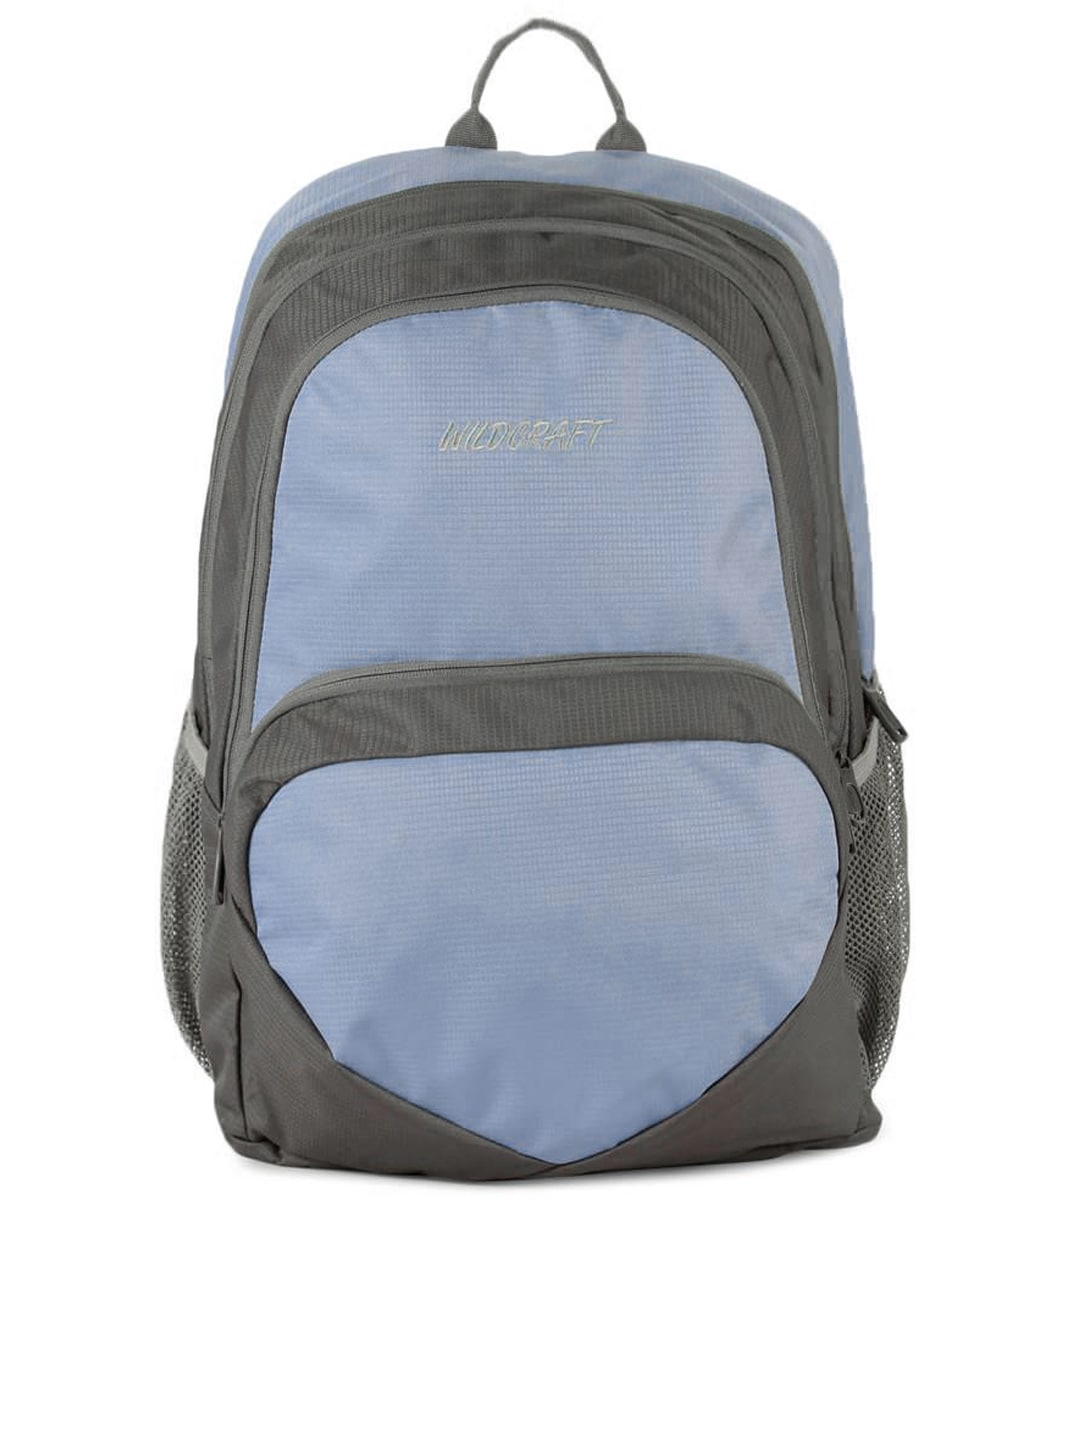 Wildcraft Unisex Reflex Grey Backpack